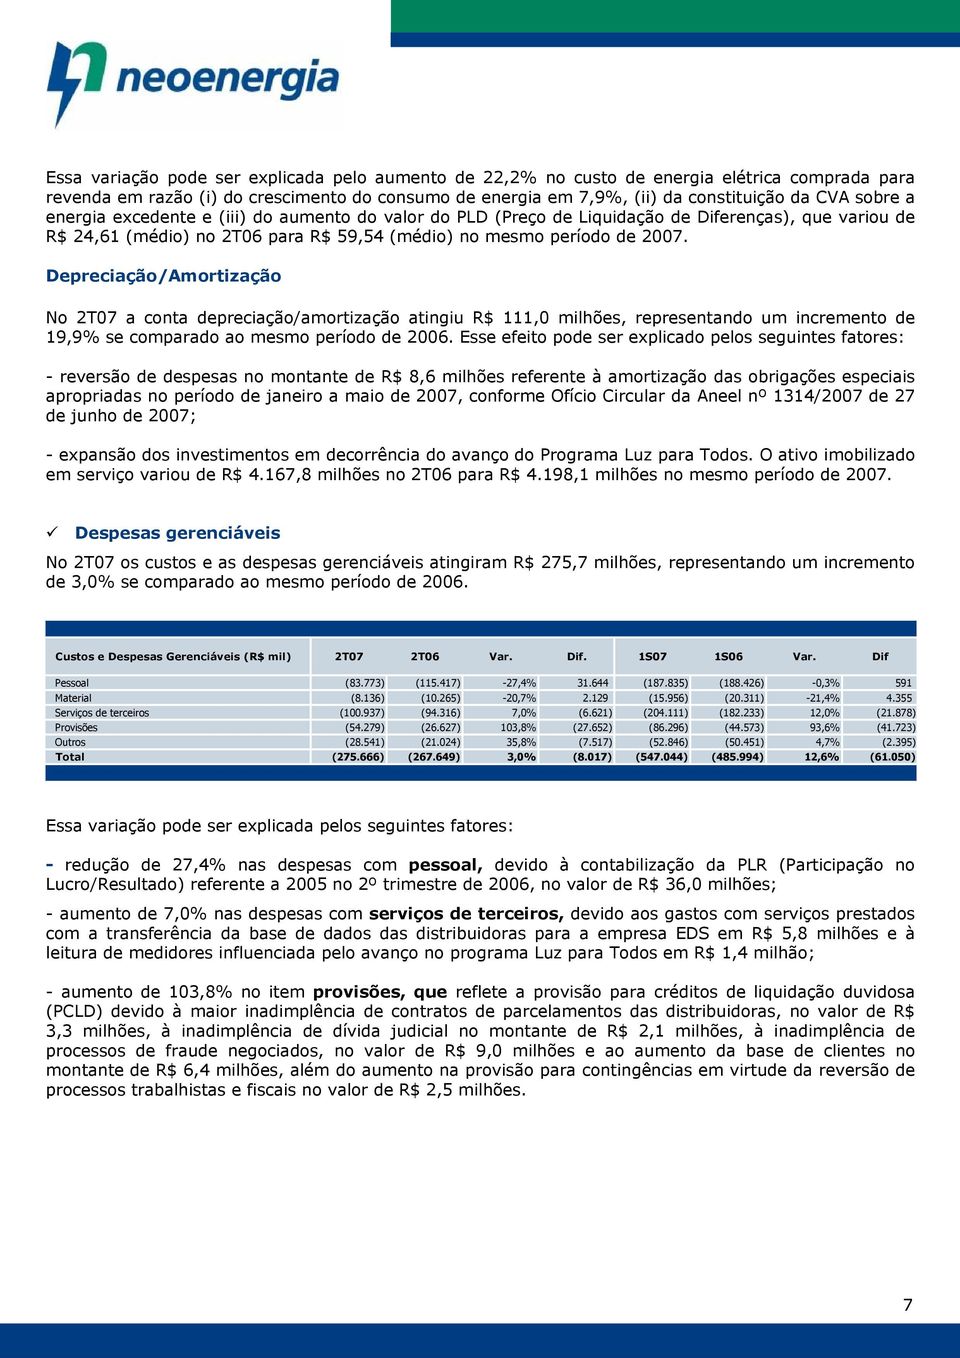 Depreciação/Amortização No 2T07 a conta depreciação/amortização atingiu R$ 111,0 milhões, representando um incremento de 19,9% se comparado ao mesmo período de 2006.